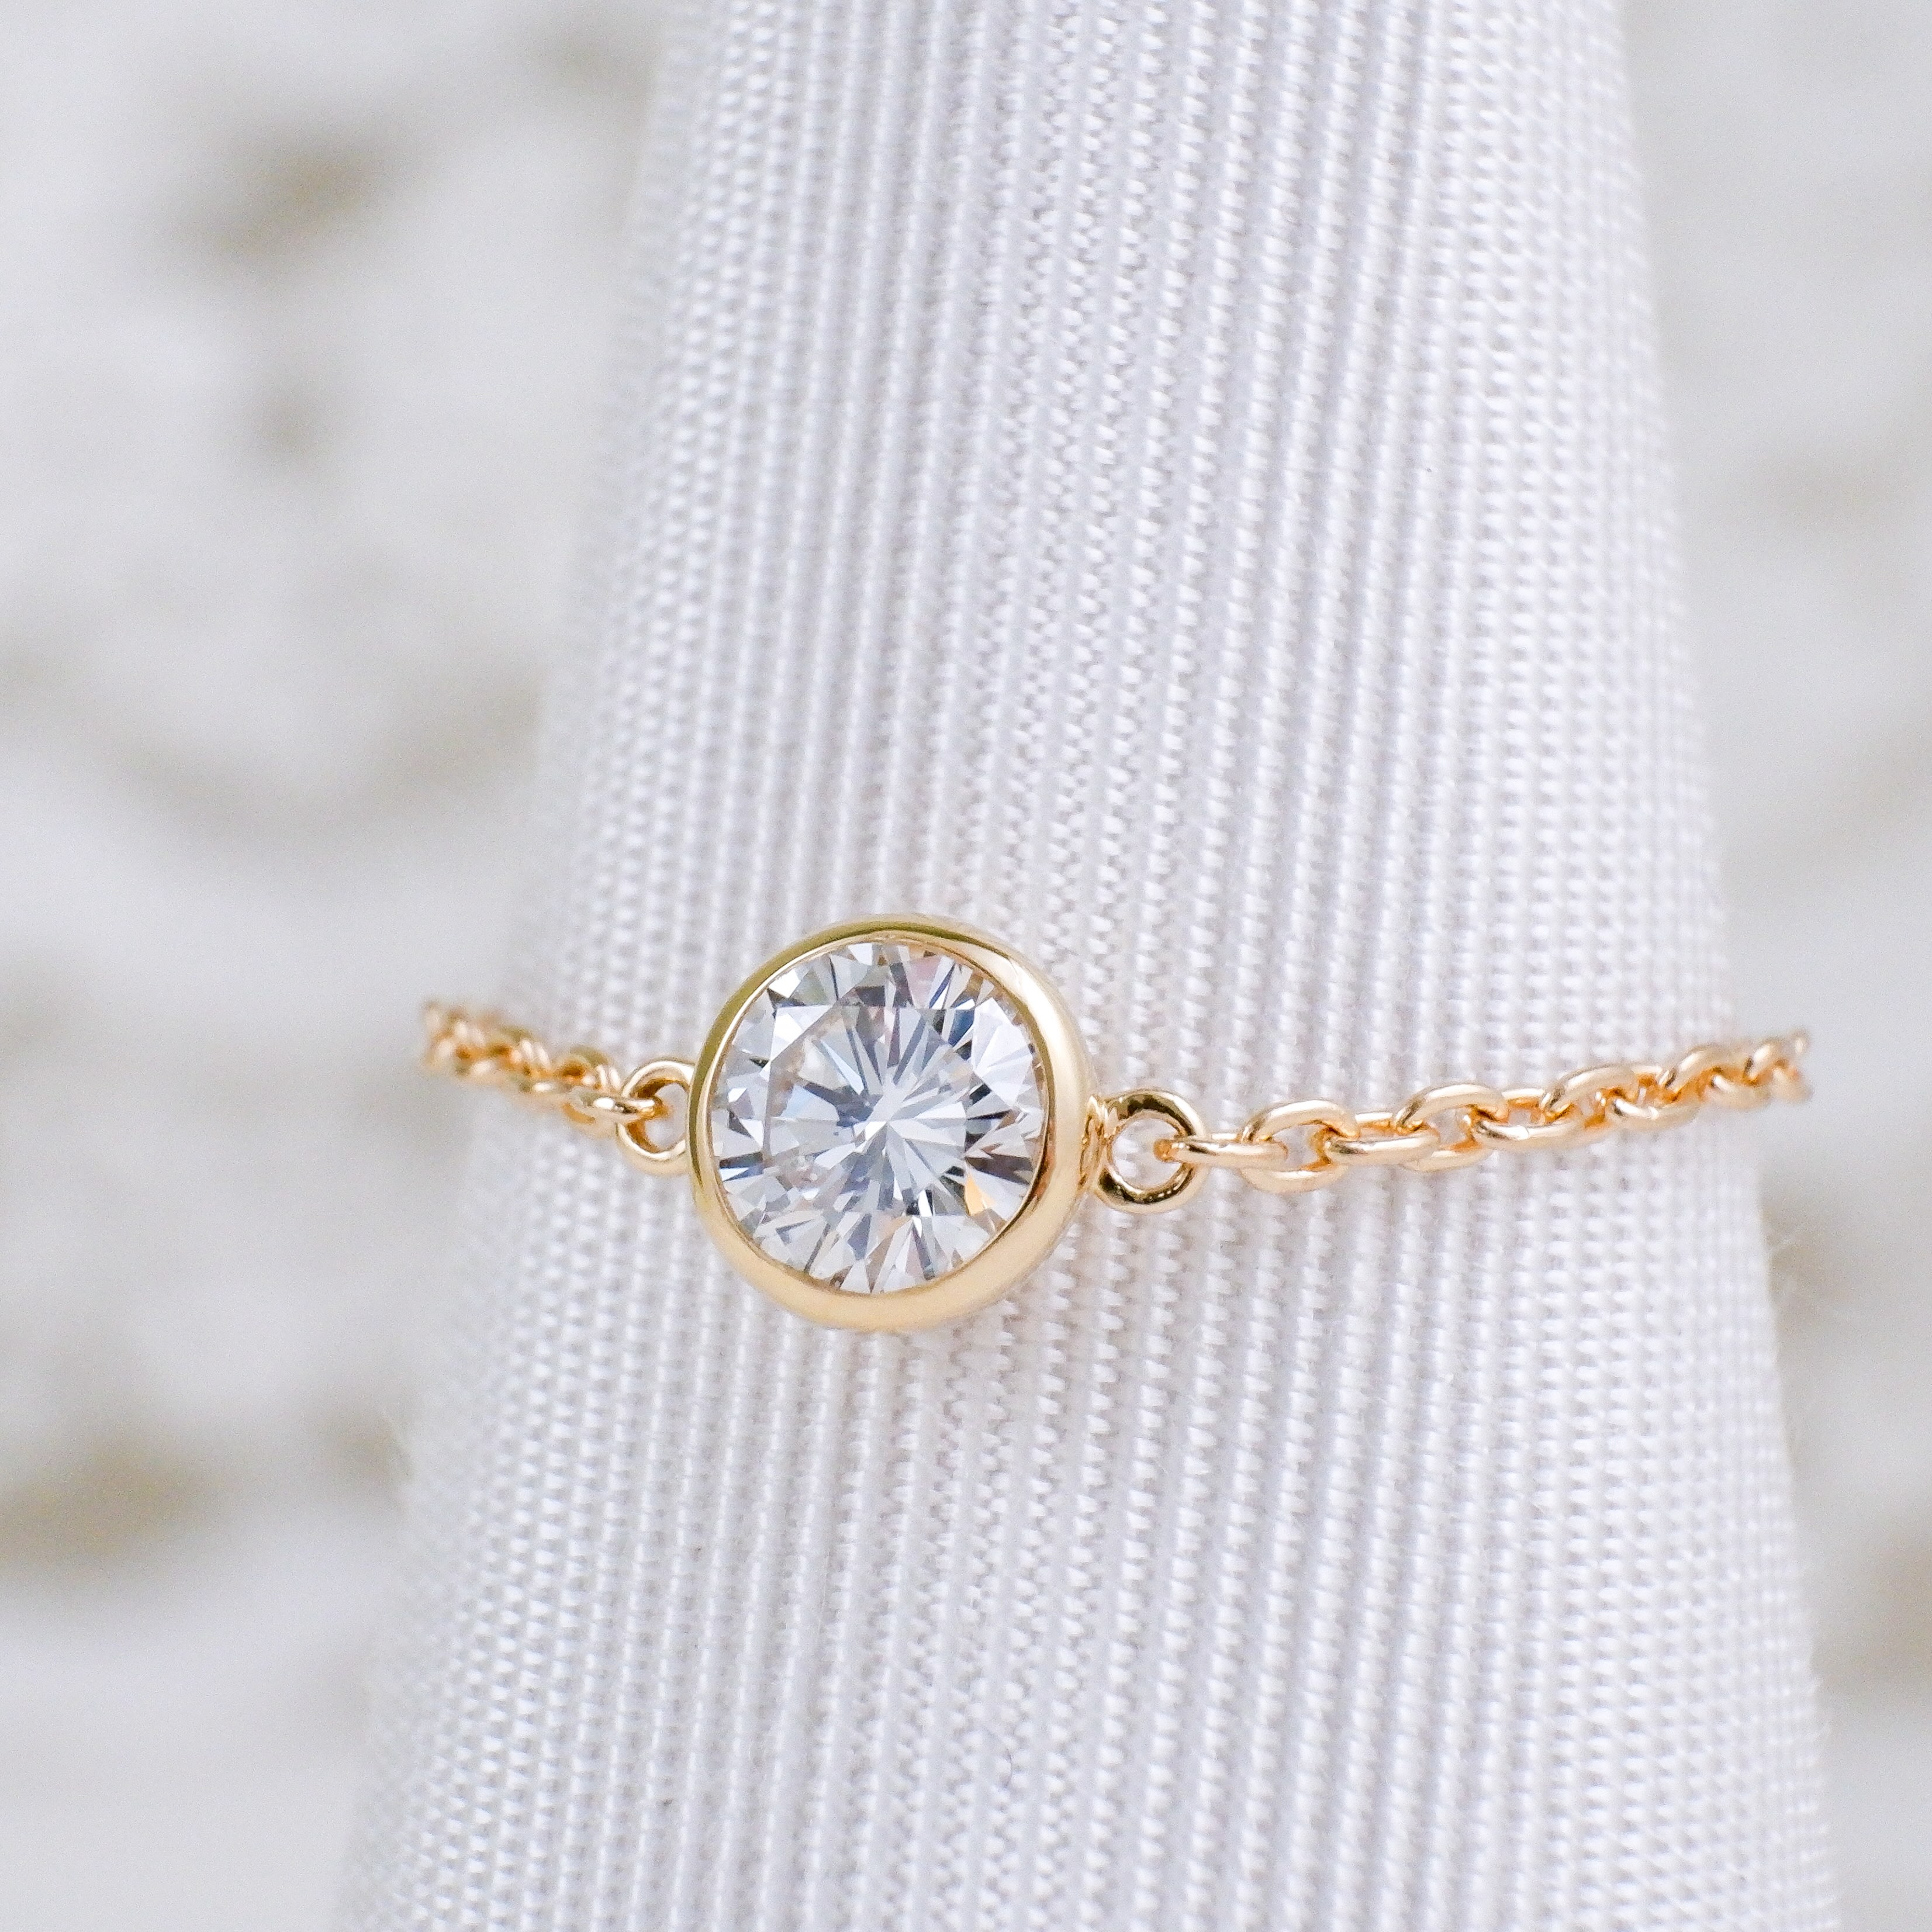 K18YG ダイヤモンド チェーンリング Grand Bezel（グランベゼル） 0.4ct Dカラー SI1クラス VERYGOODカット レディース 一粒 diamond ring gold lady's ダイヤ リング 指輪 チェーン幅1.5mm